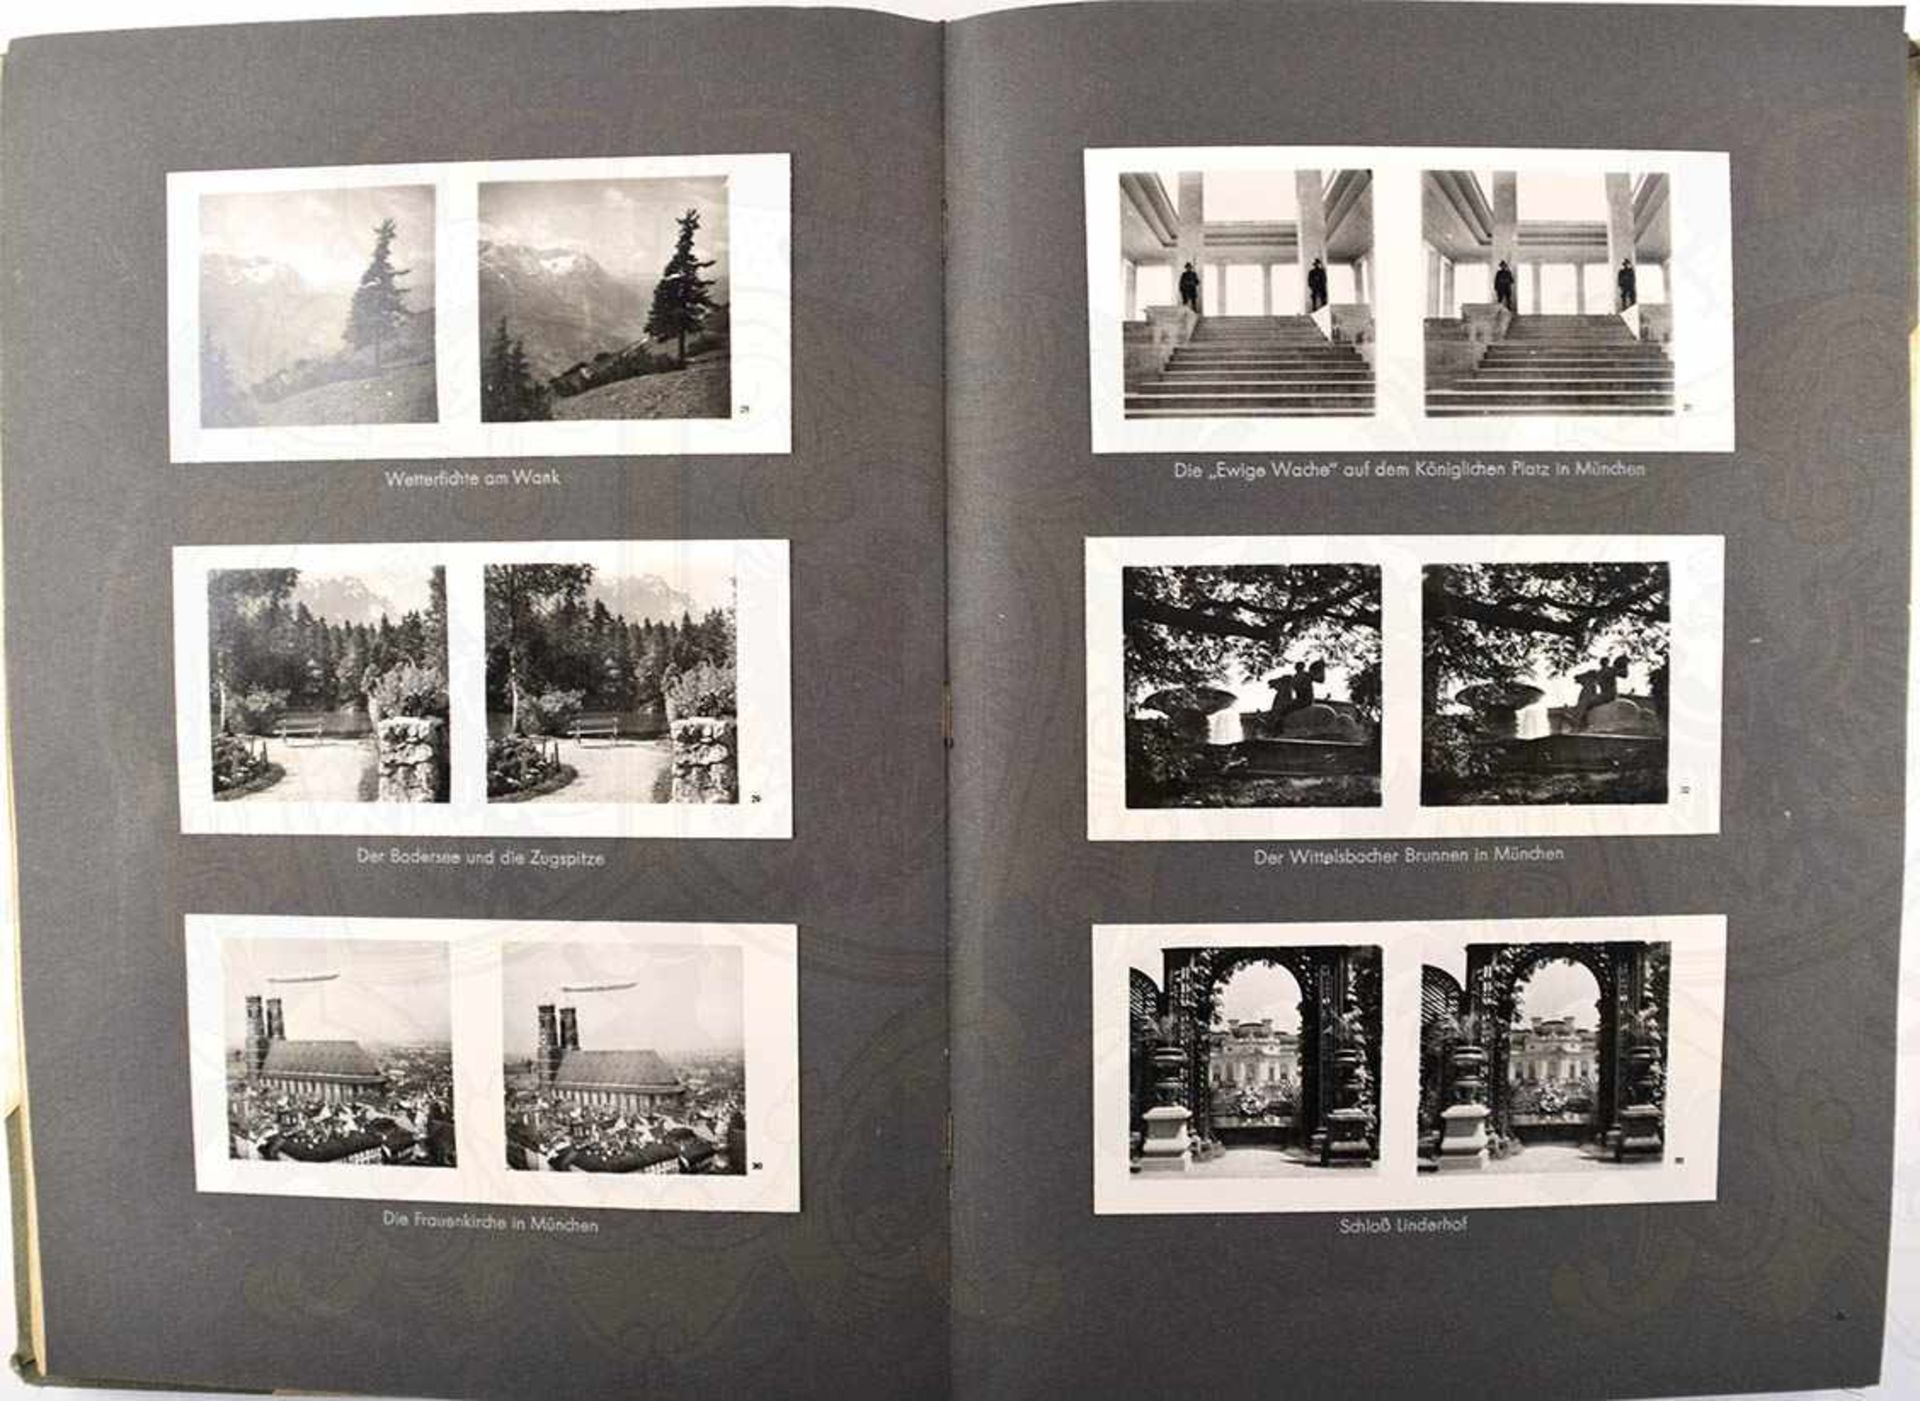 DEUTSCHE GAUE, 1938, komplett mit 200 Bildern, davon 72 Bilder im Album montiert, m. Betrachter u. - Bild 2 aus 3